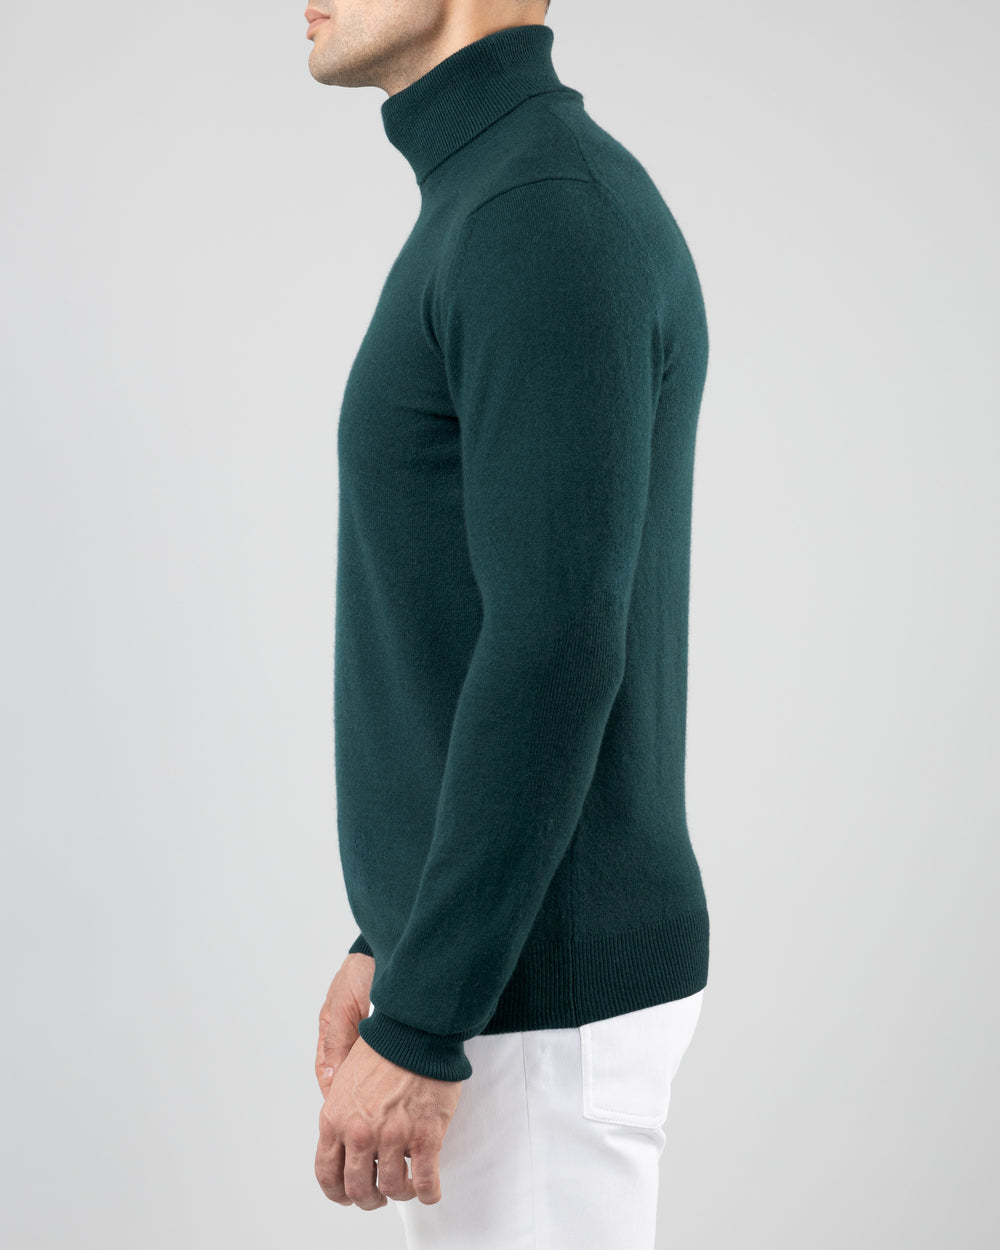 Aspen Cashmere Turtleneck Sweater, Emerald